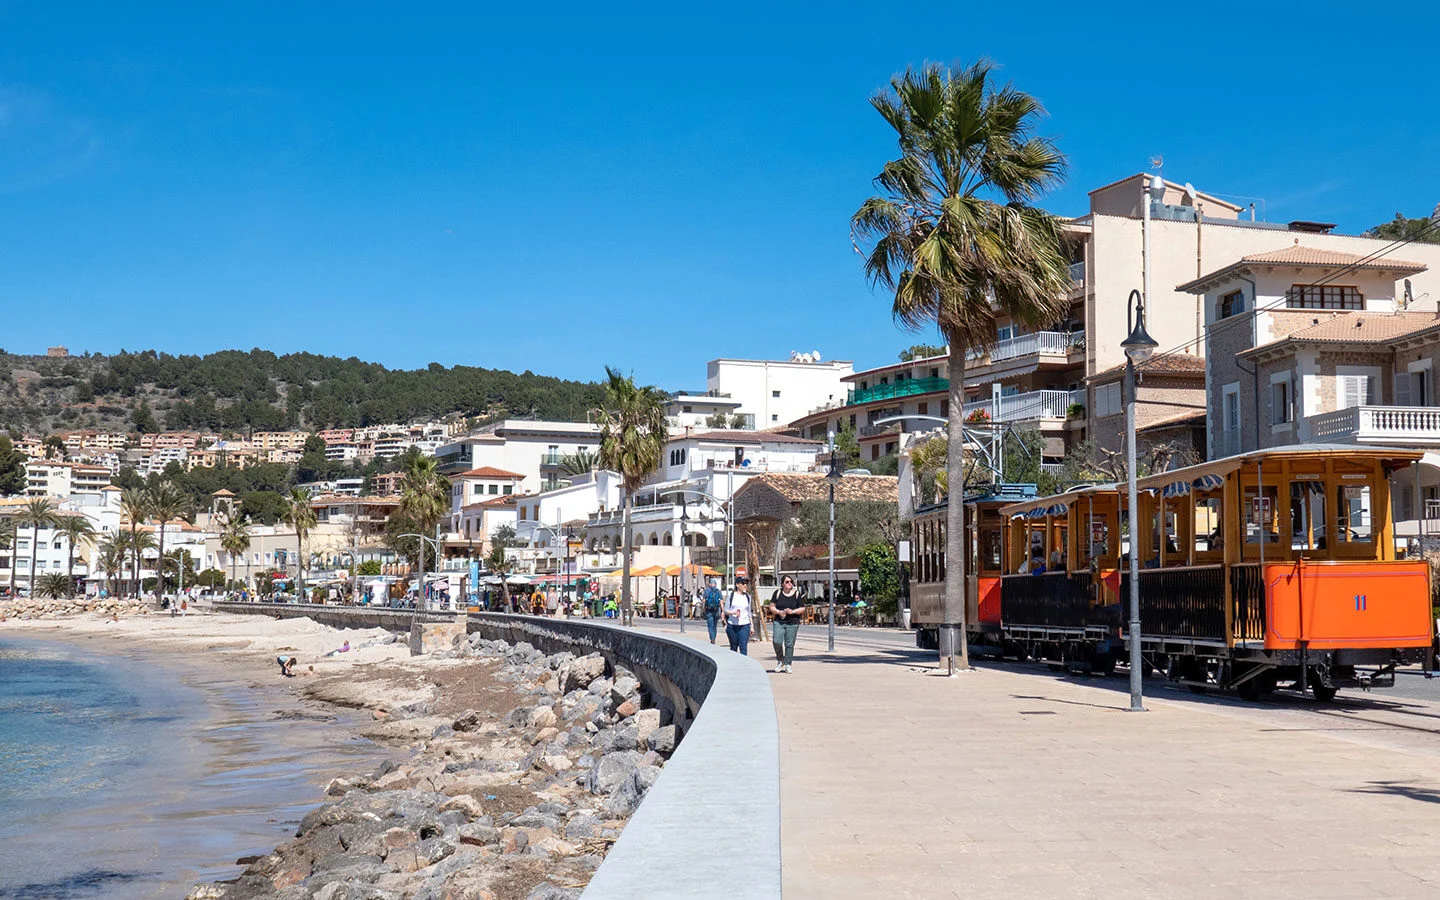 Tram running along the waterfront in Port de Sóller, Mallorca